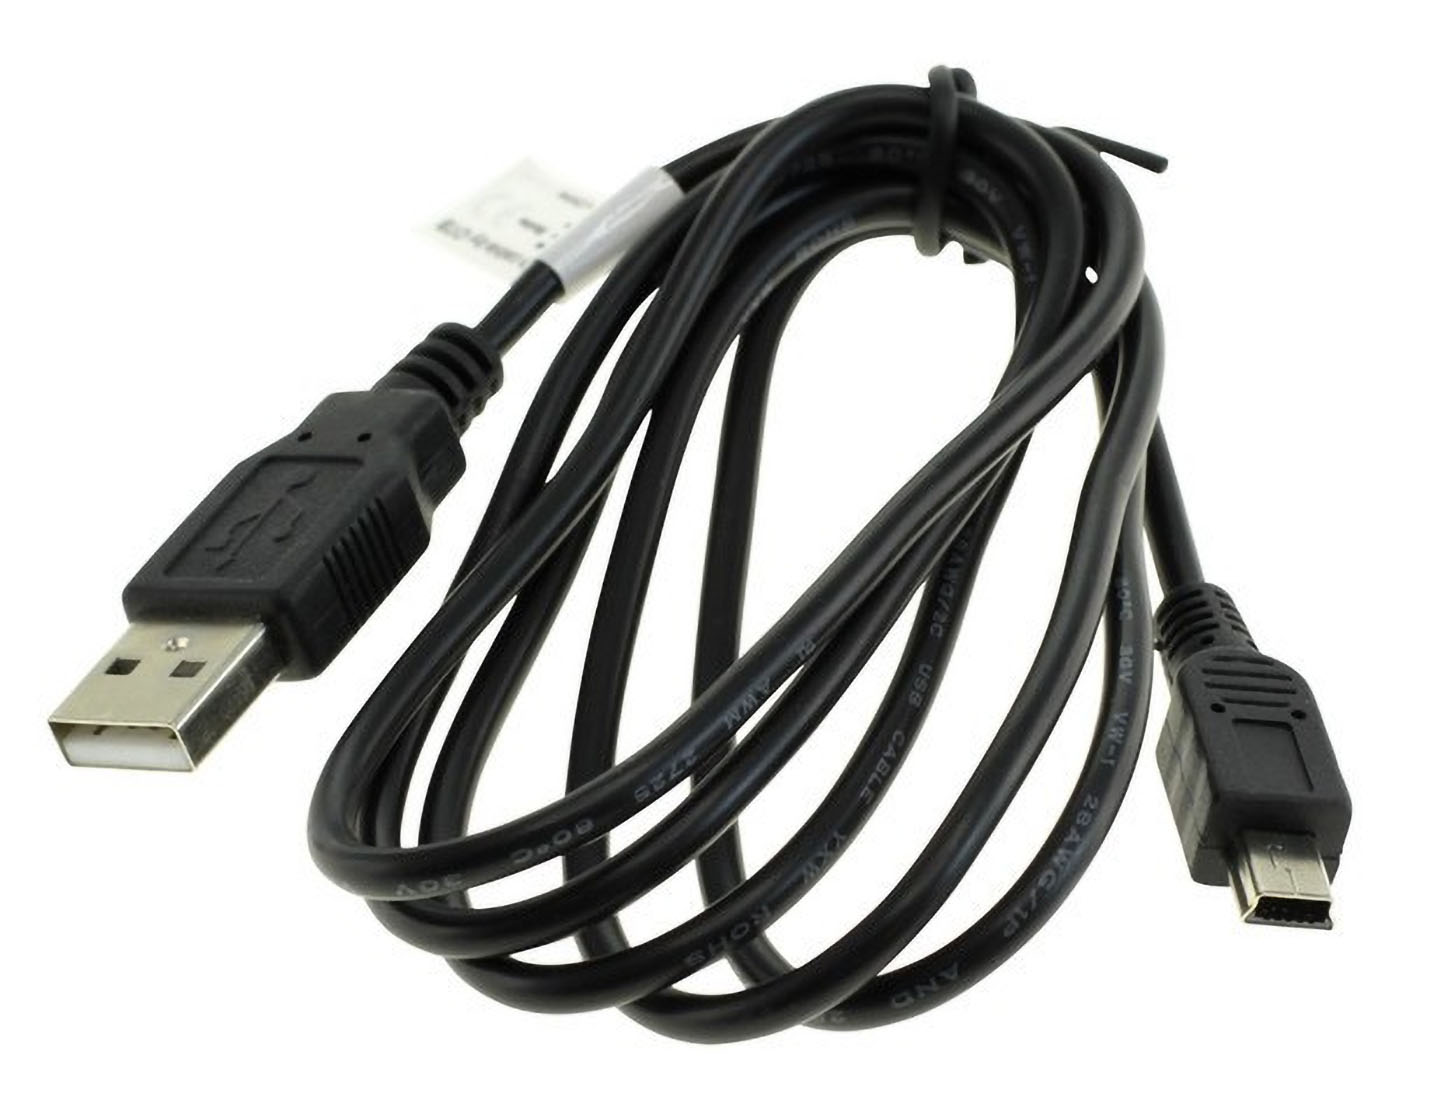 MOBILOTEC USB-Datenkabel kompatibel sonstige Kabel Life E44050 mit Medion, Medion schwarz